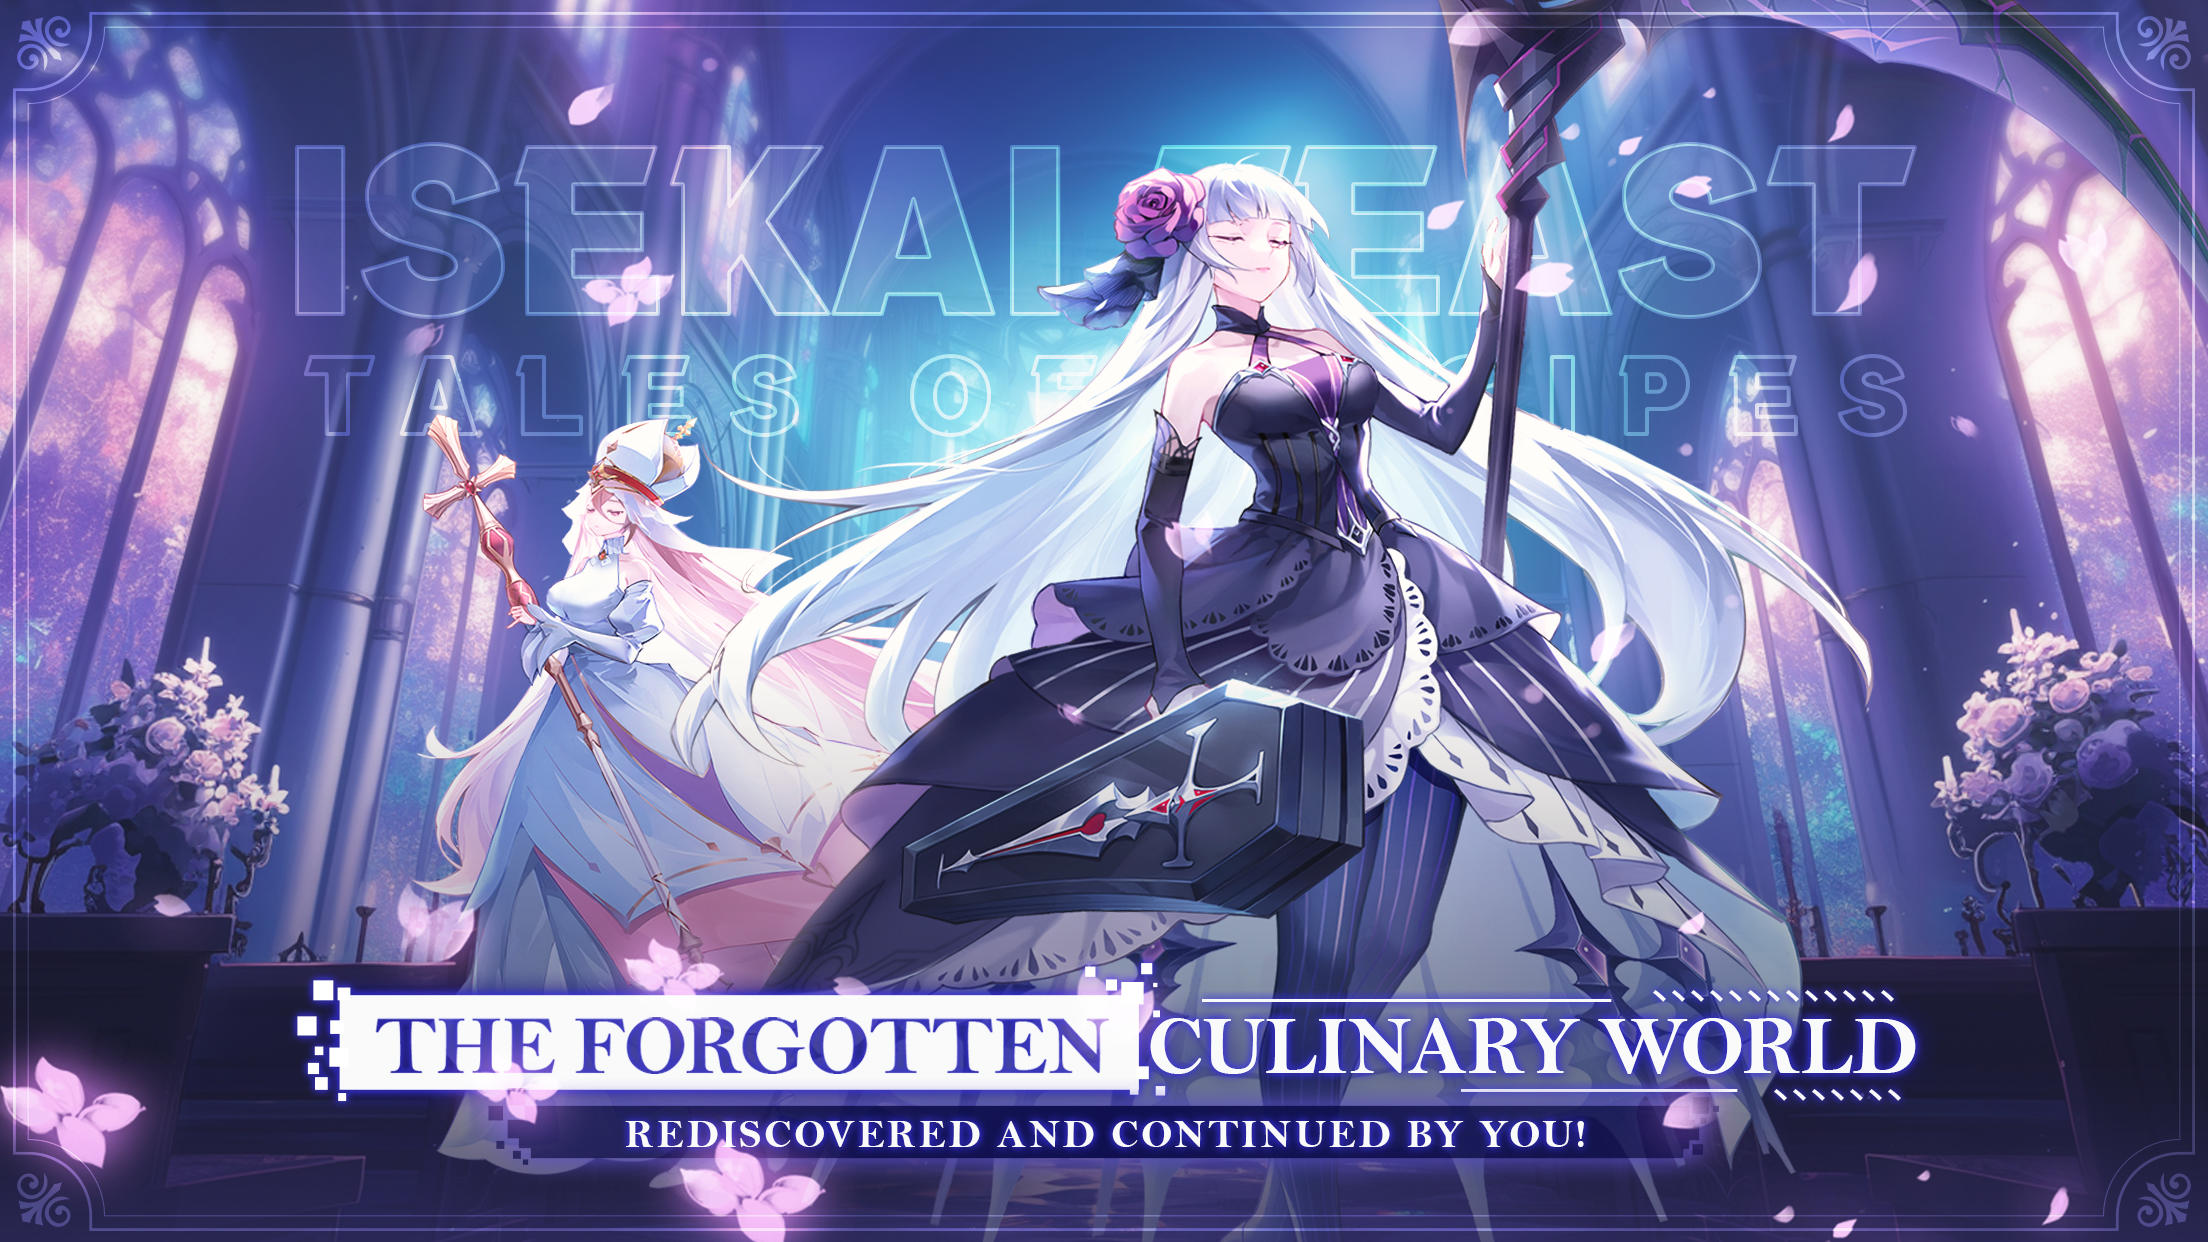 Isekai Feast: Tales of Recipes遊戲截圖